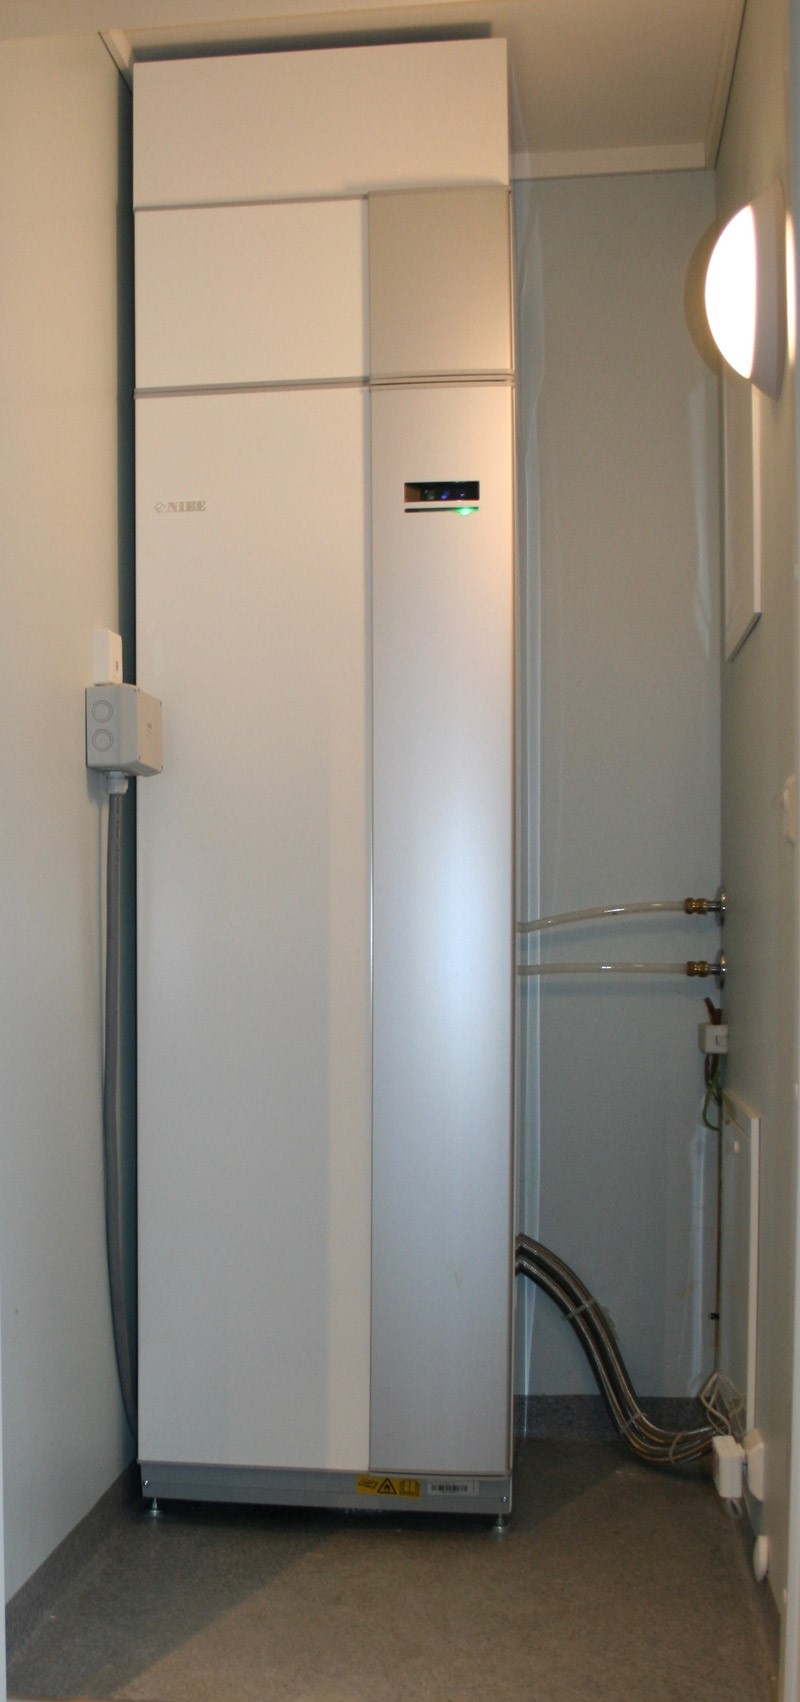 Kompakt løsning med 3-i-1: Varmer huset (gulvvarme eller radiatorer), tappevann og til-lufta i ventilasjonsanlegget.